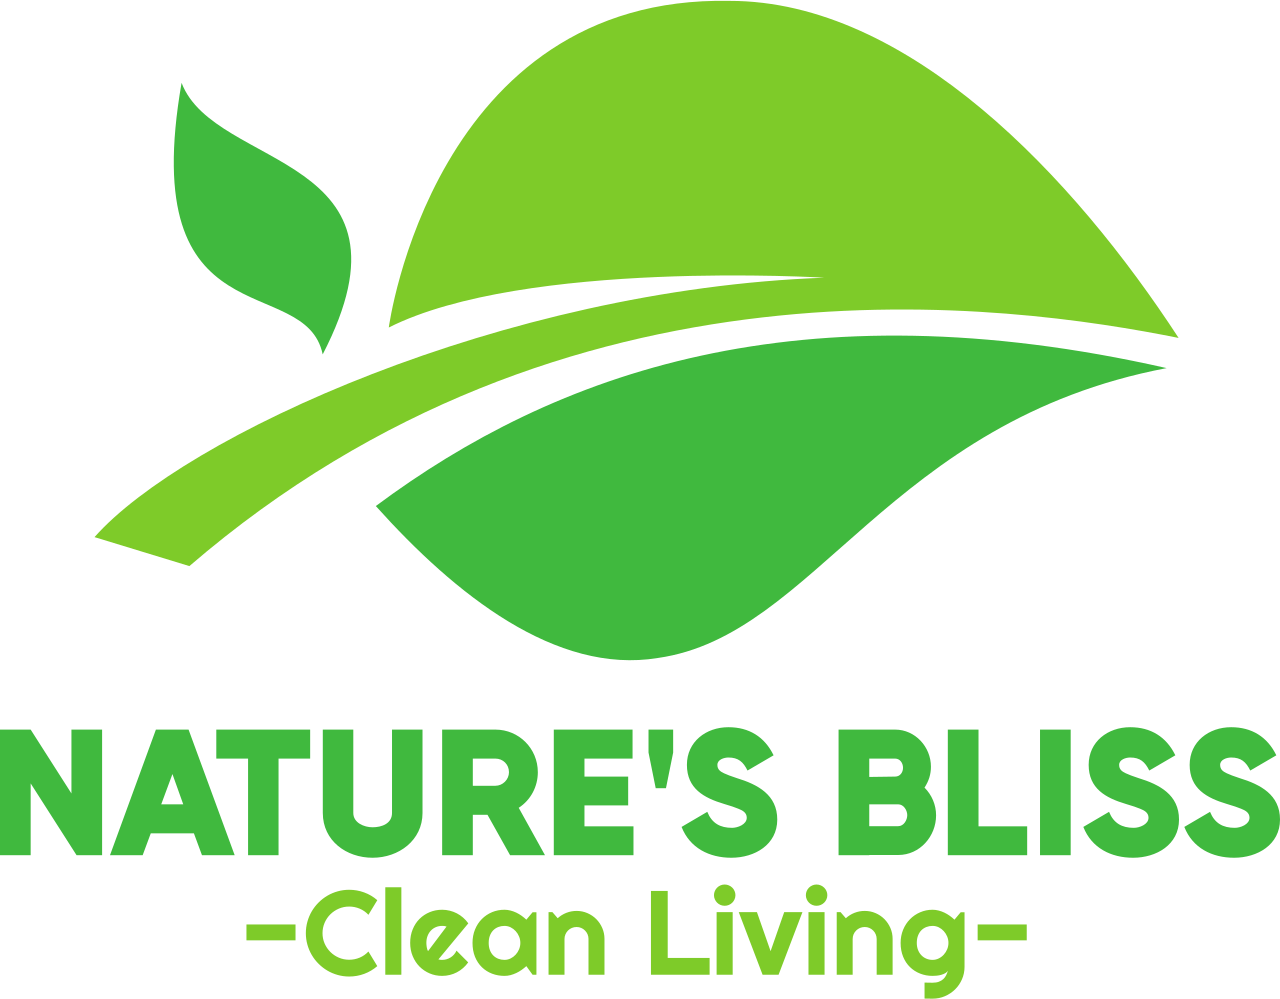 Nature's Bliss's logo